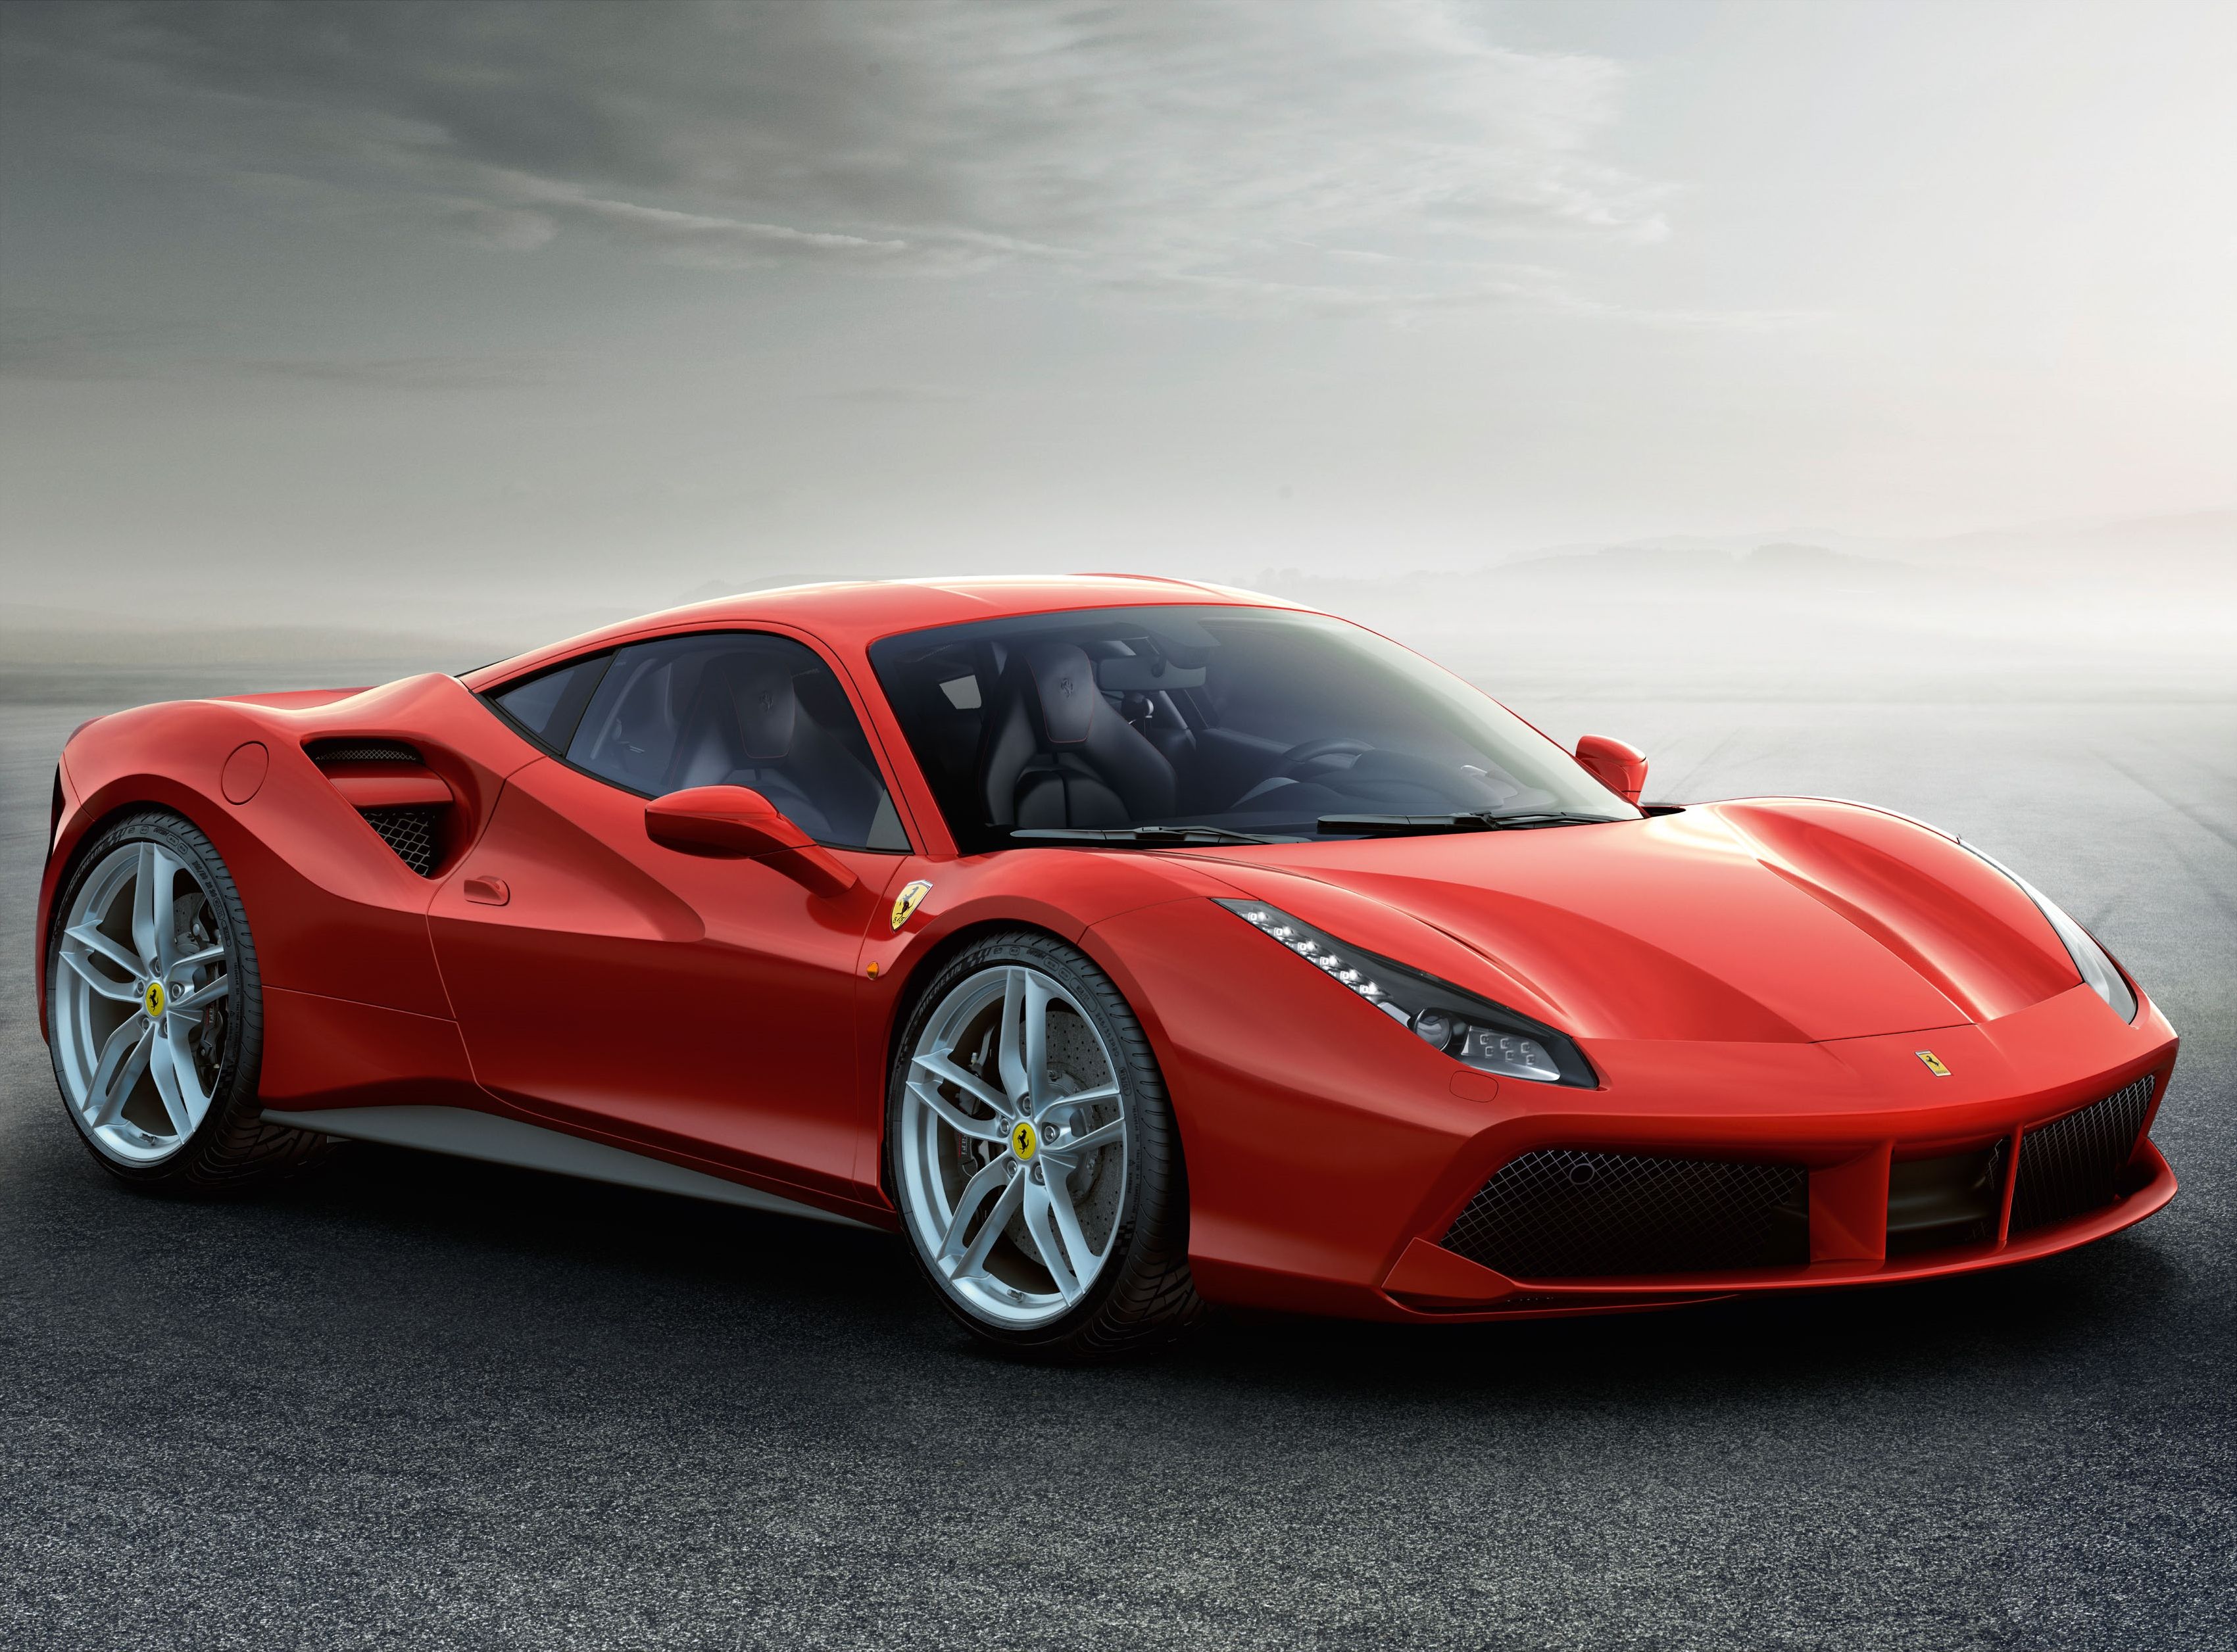 Fondos de pantalla de Ferrari - FondosMil